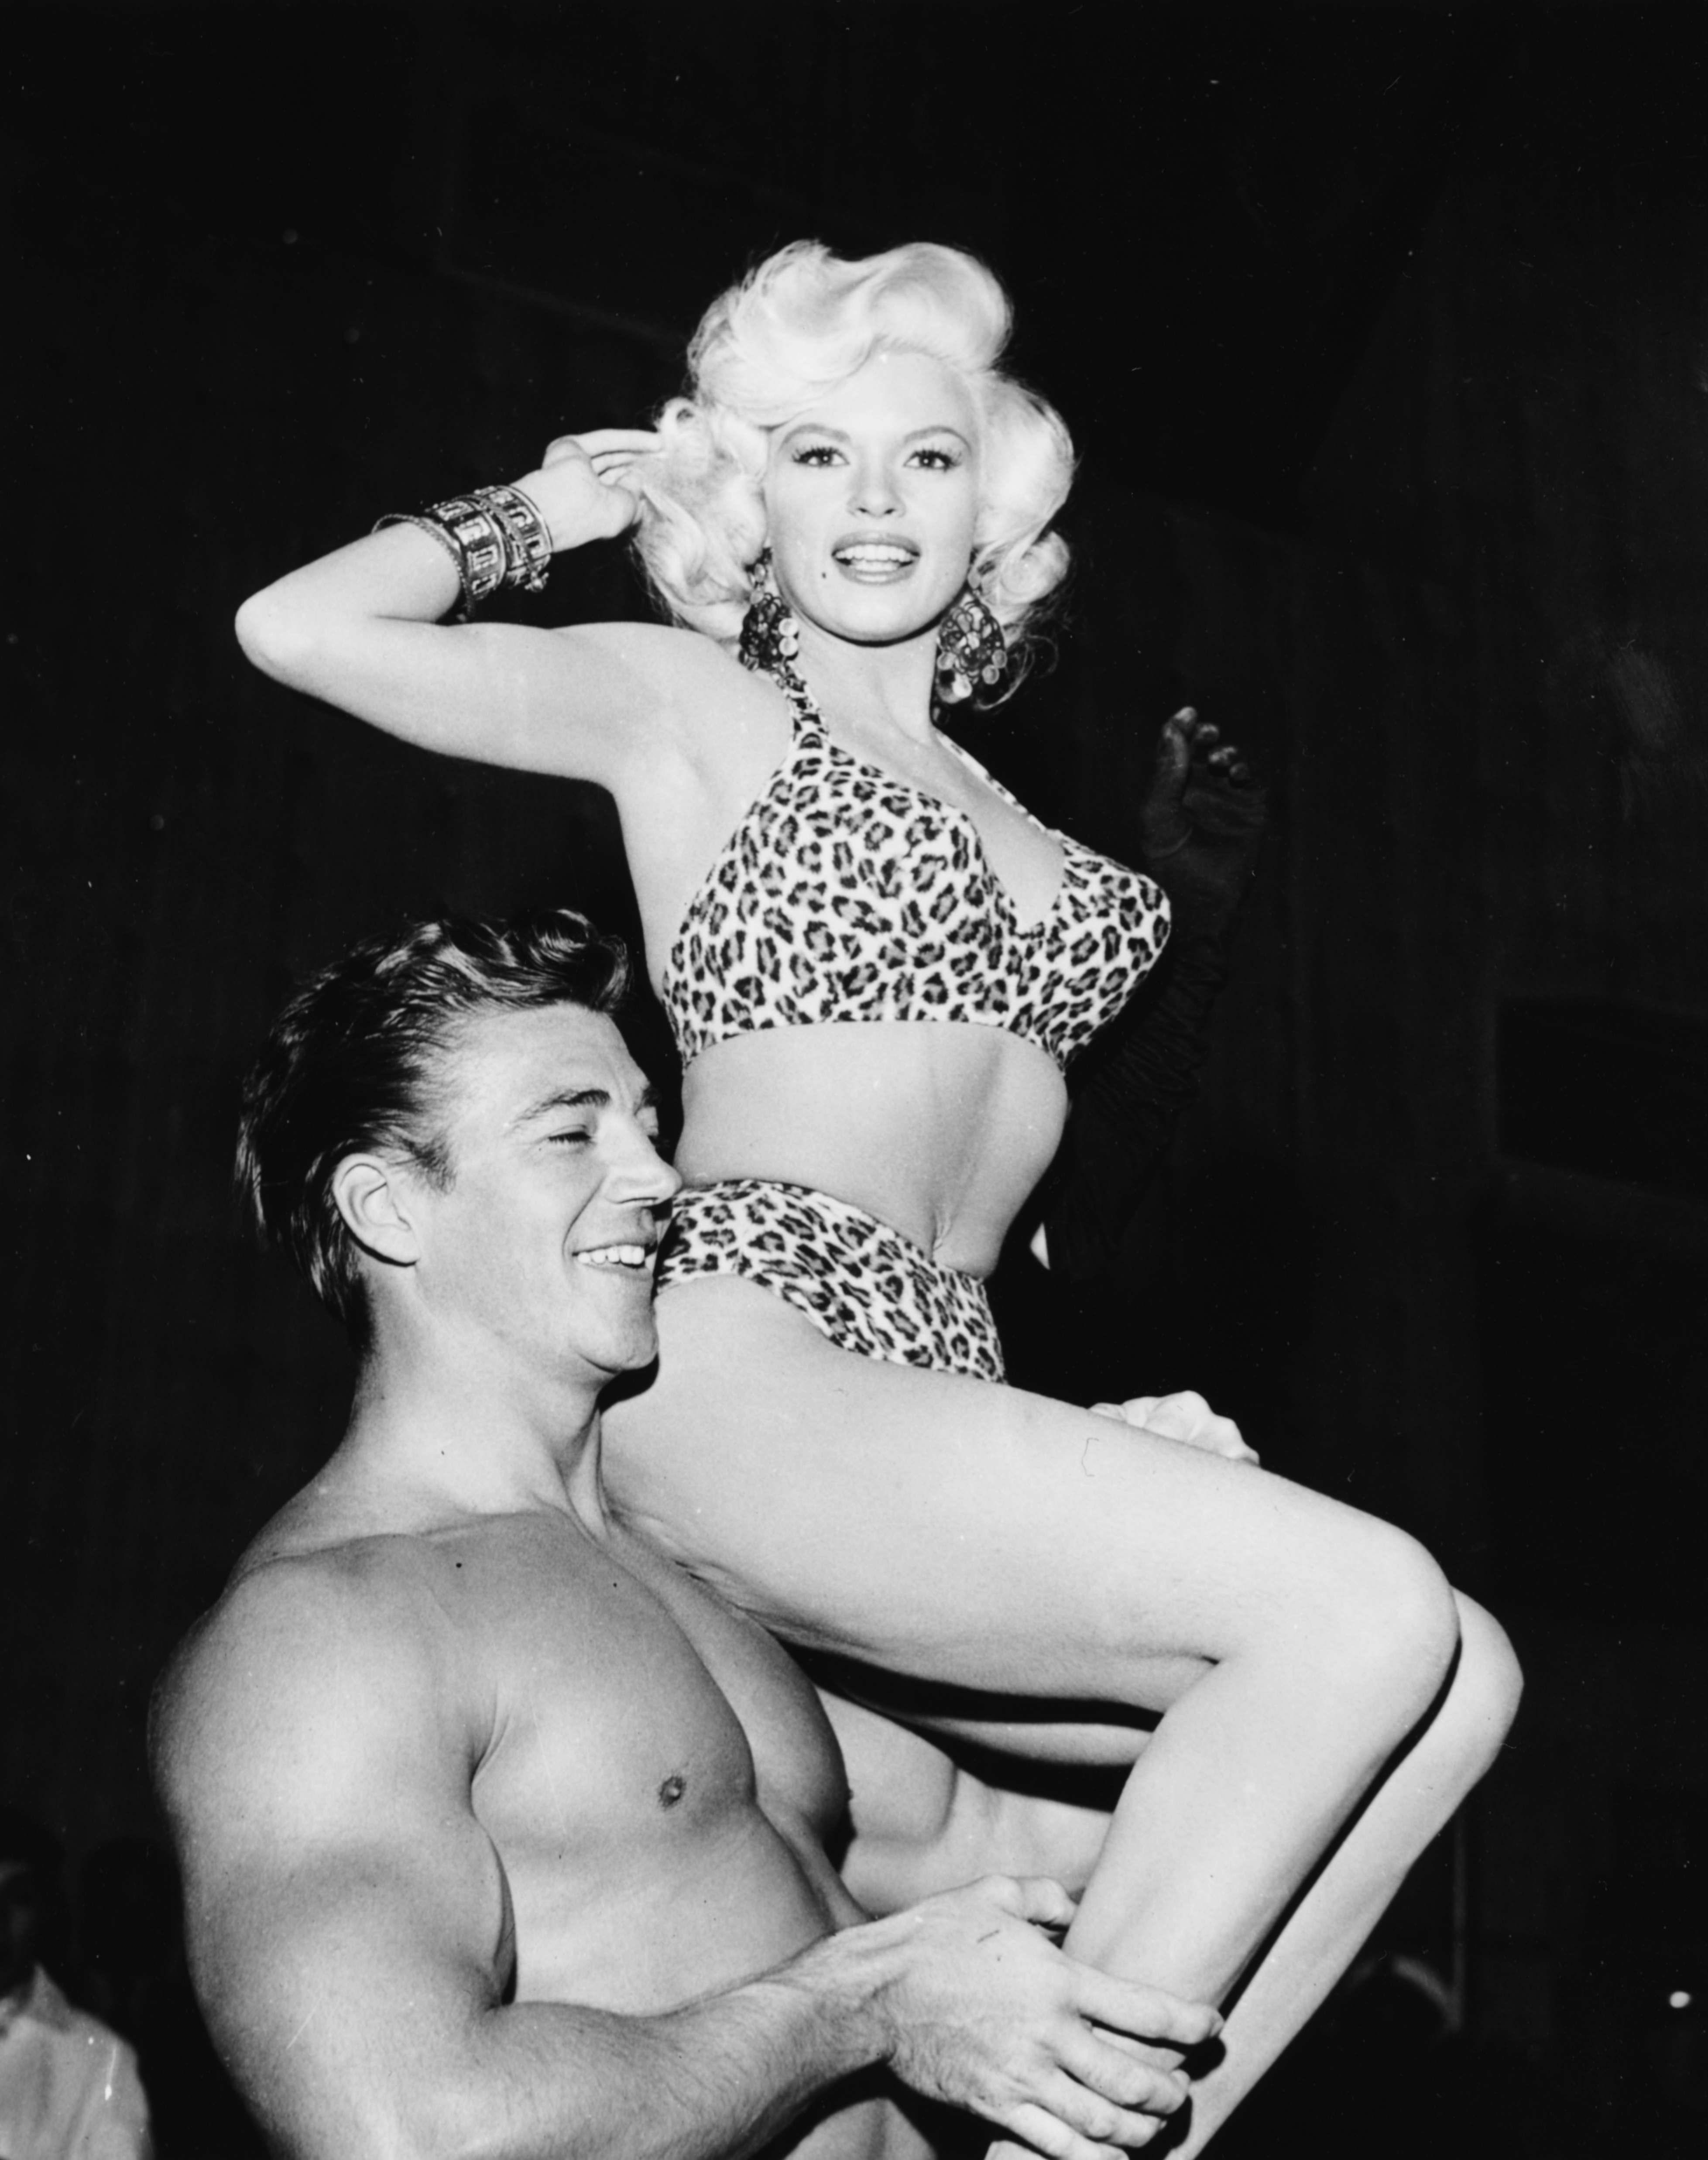 Die Schauspielerin Jayne Mansfield trägt 1956 einen Bikini mit Leopardenmuster in der charakteristischen Form.